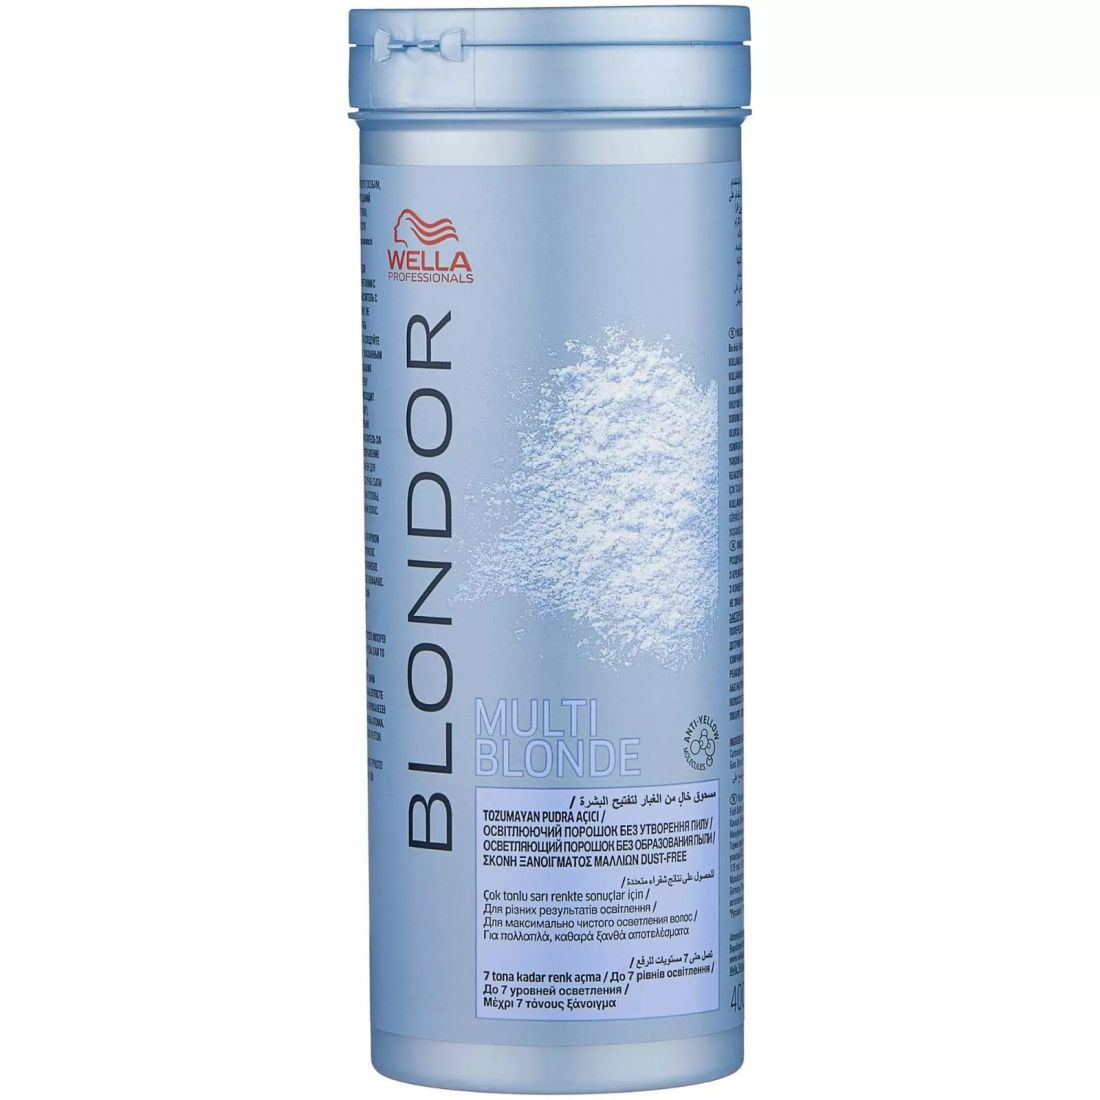 Порошок для волос  Wella Professionals BLONDOR MULTI-BLONDE для блондирования без образования пыли 400 гр. (арт.1786)